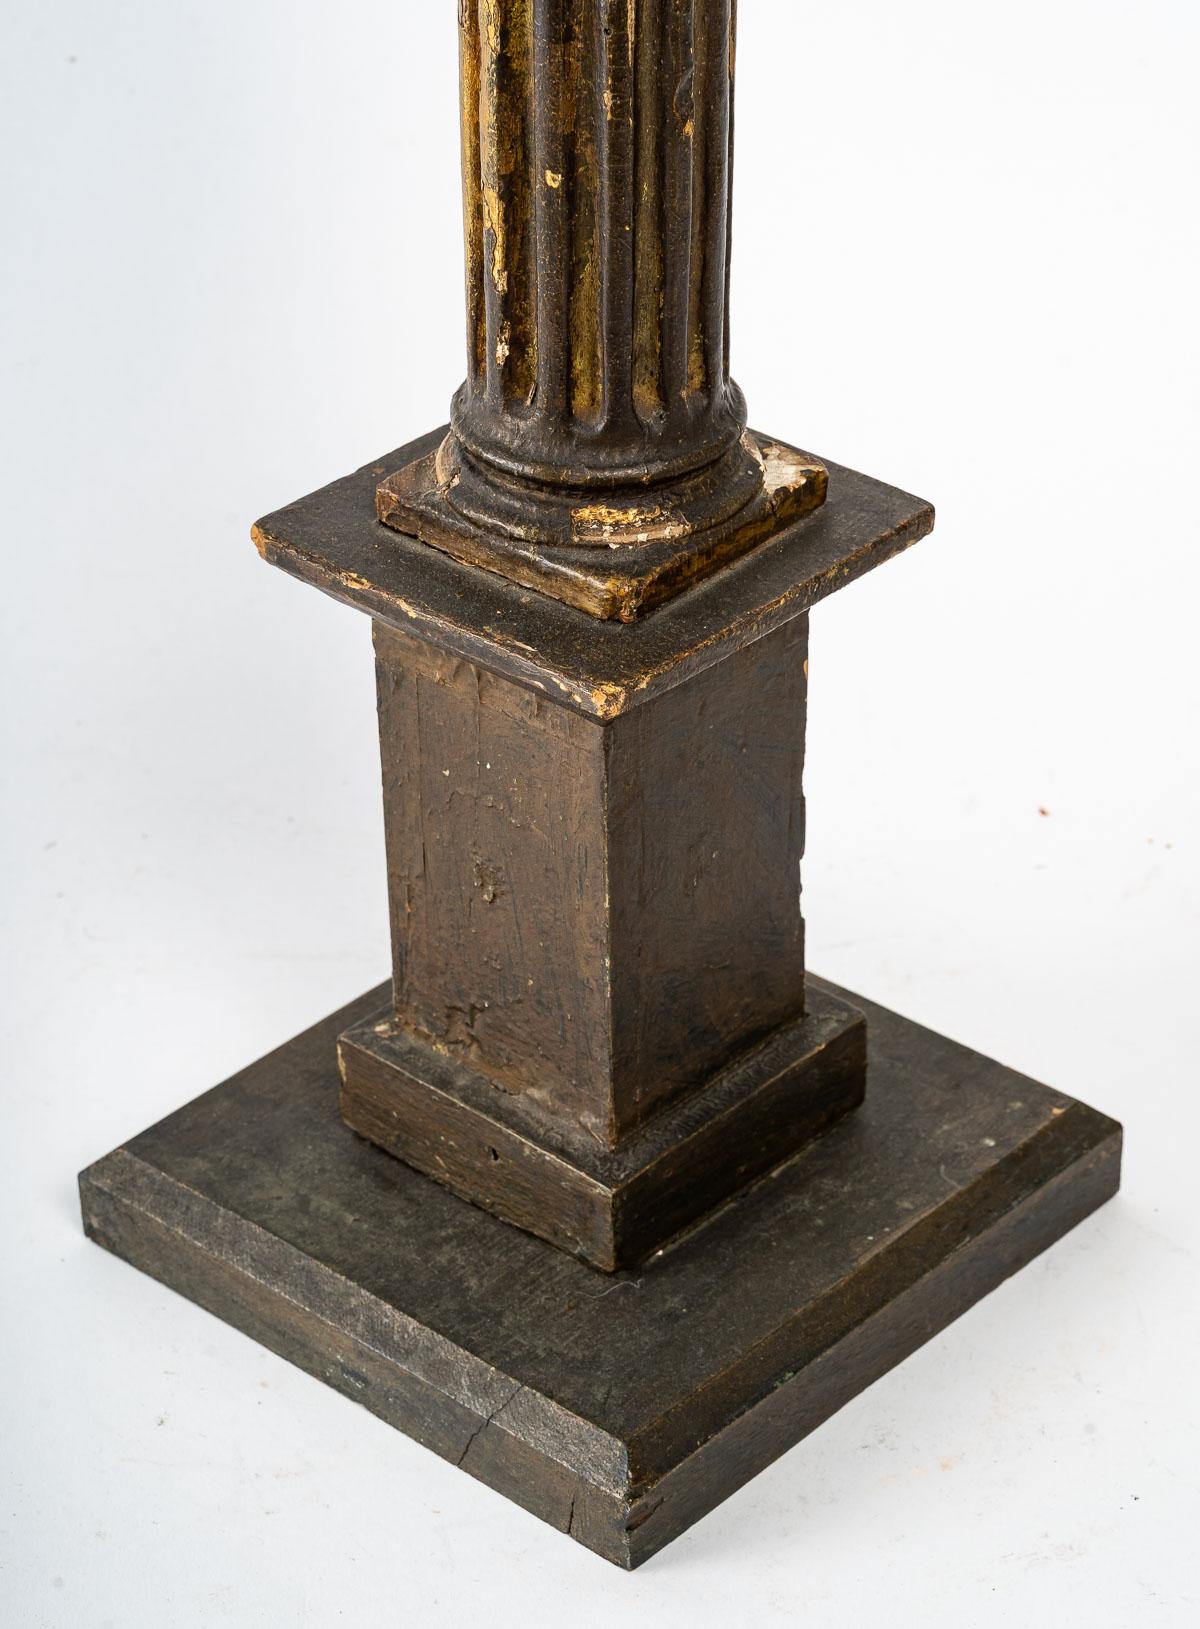 Bougeoir en bois sculpté et doré, 19e siècle
H : 68 cm, L : 18 cm, P : 18 cm